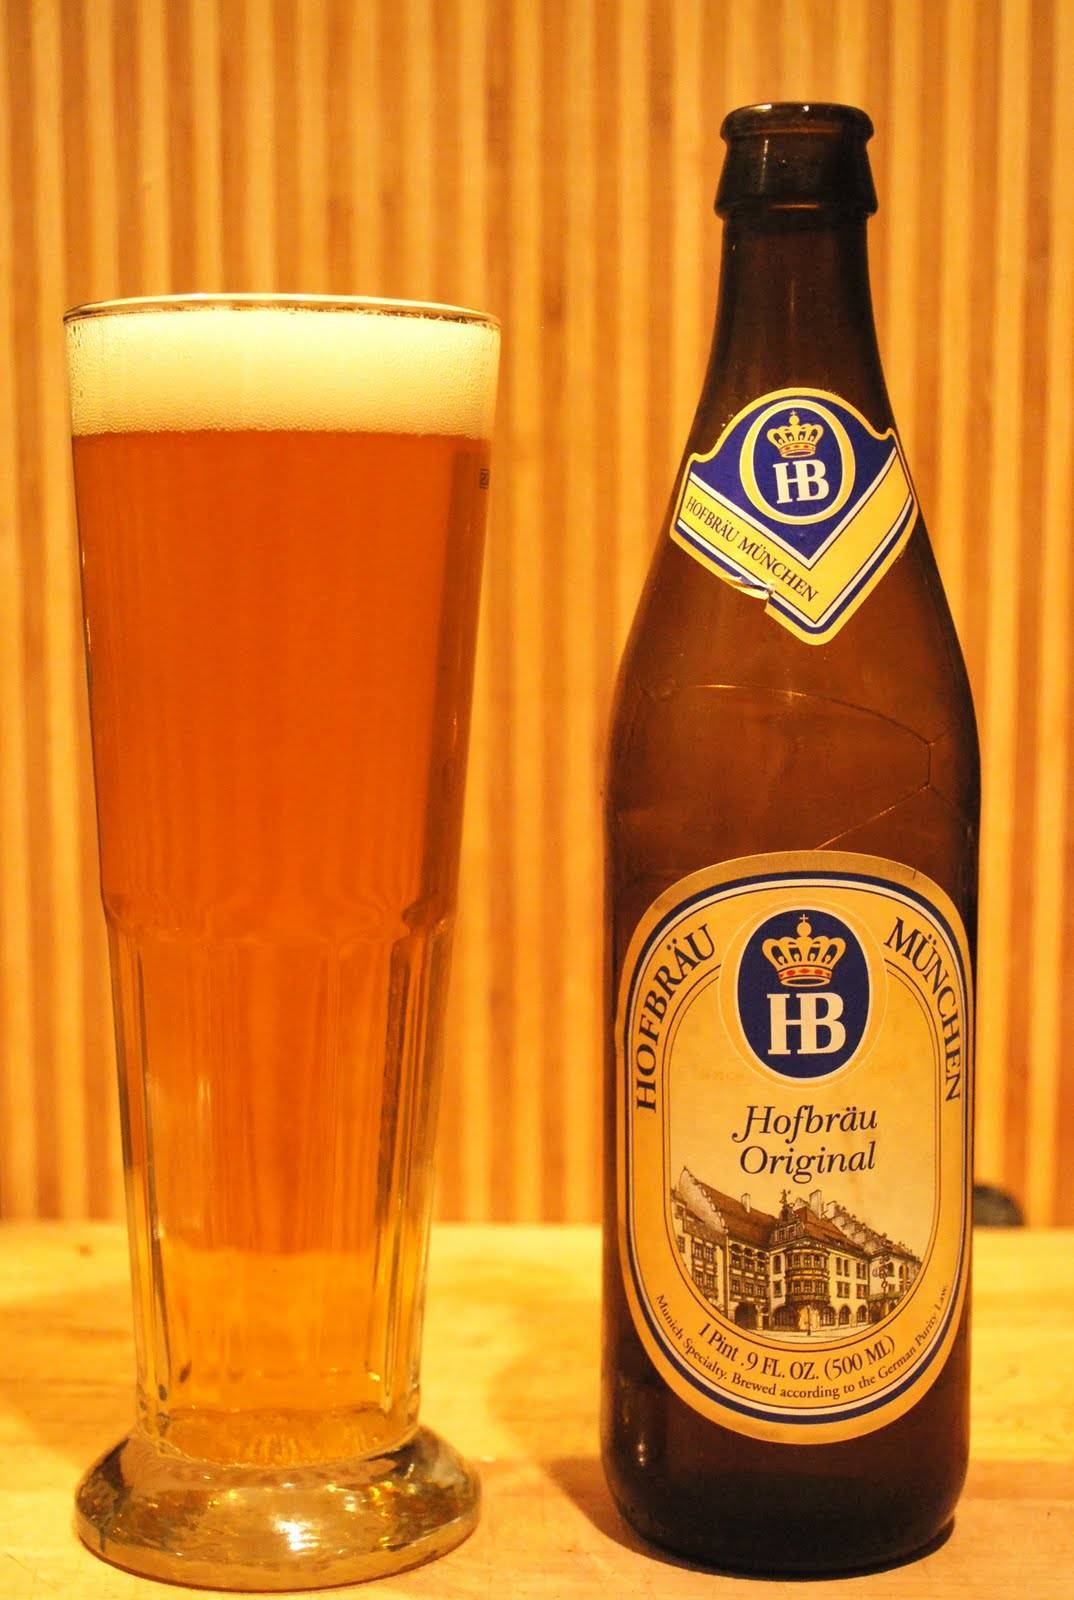 Пиво хоффброй (hofbräu) — особенности и история возникновения напитка